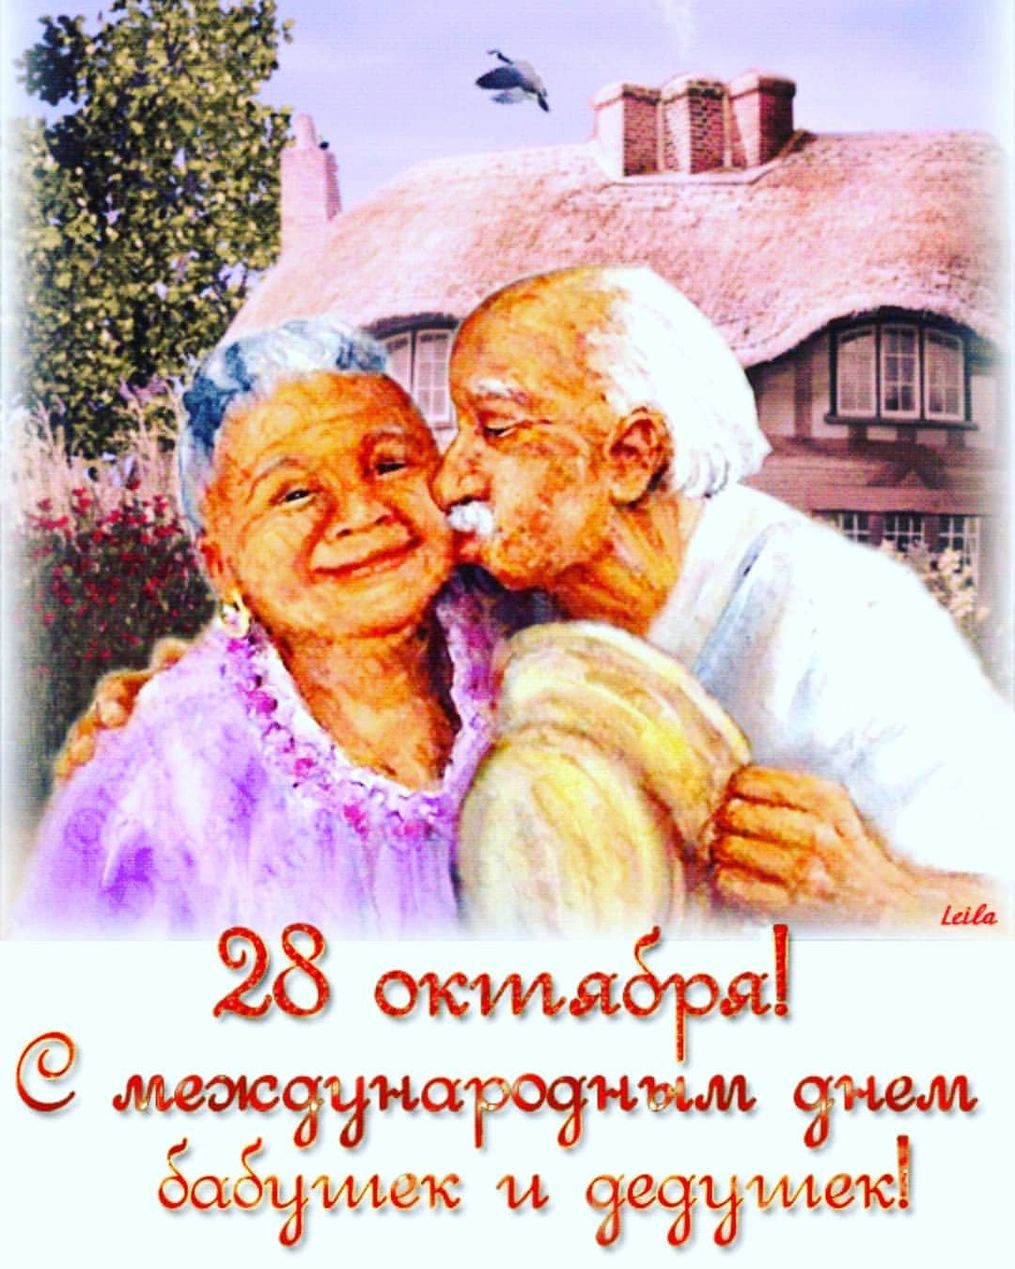 международный день бабушек и дедушек картинки